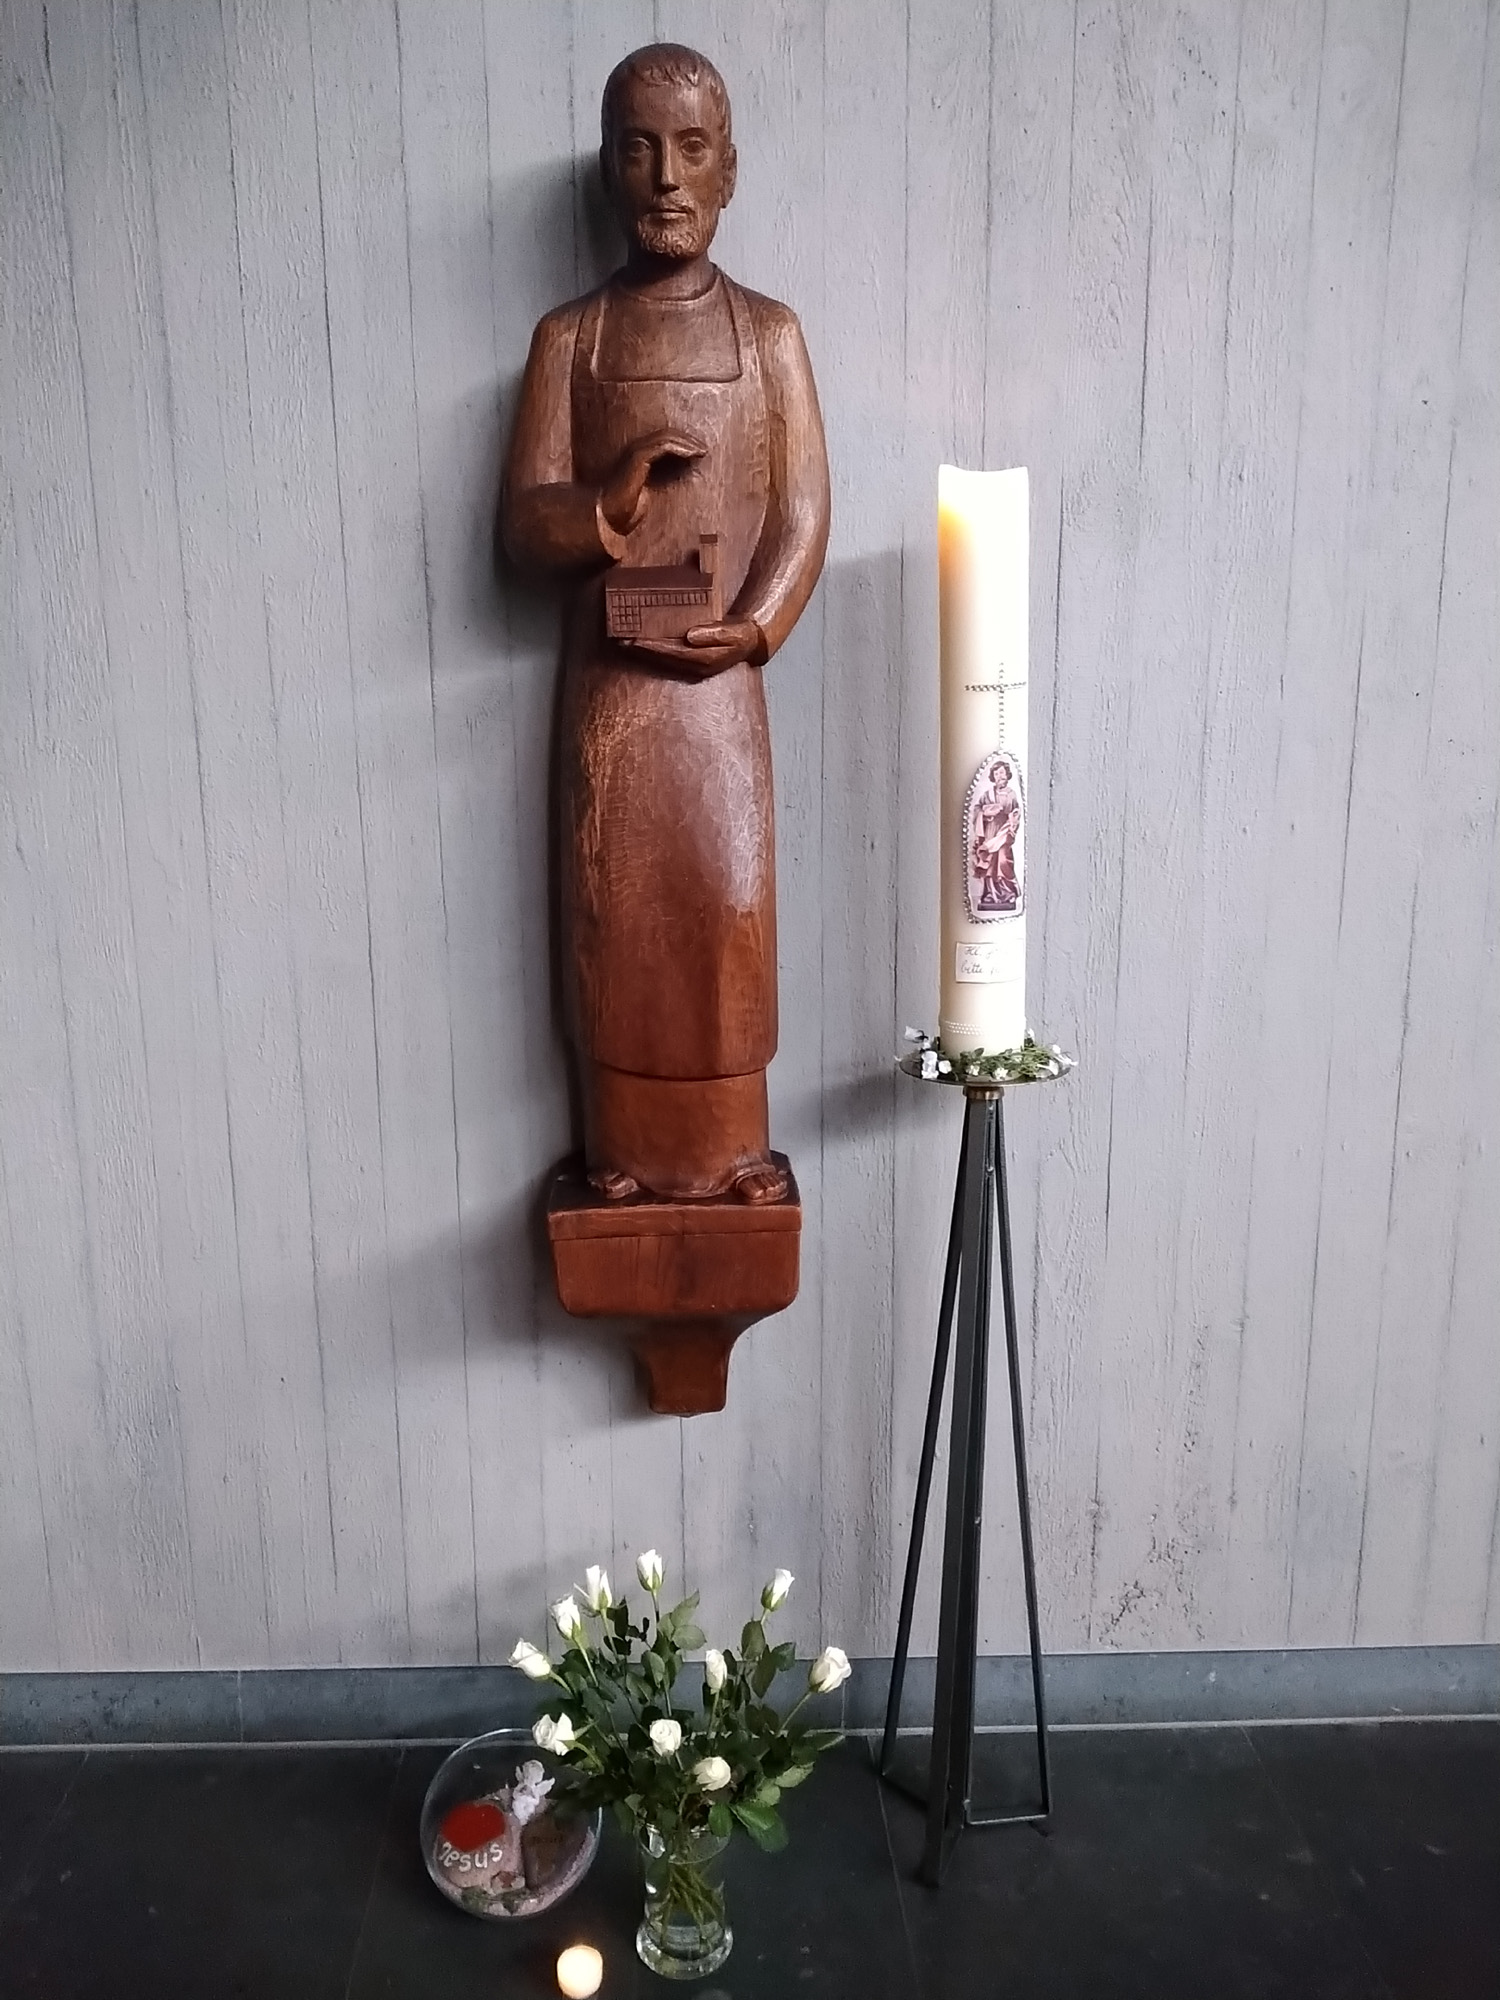 Zum Josephstag haben die Gemeindereferenten Rita und Stefan Becker in der Kiche St. Joseph die Kerze an der Statue des Hl. Josphs entzündet